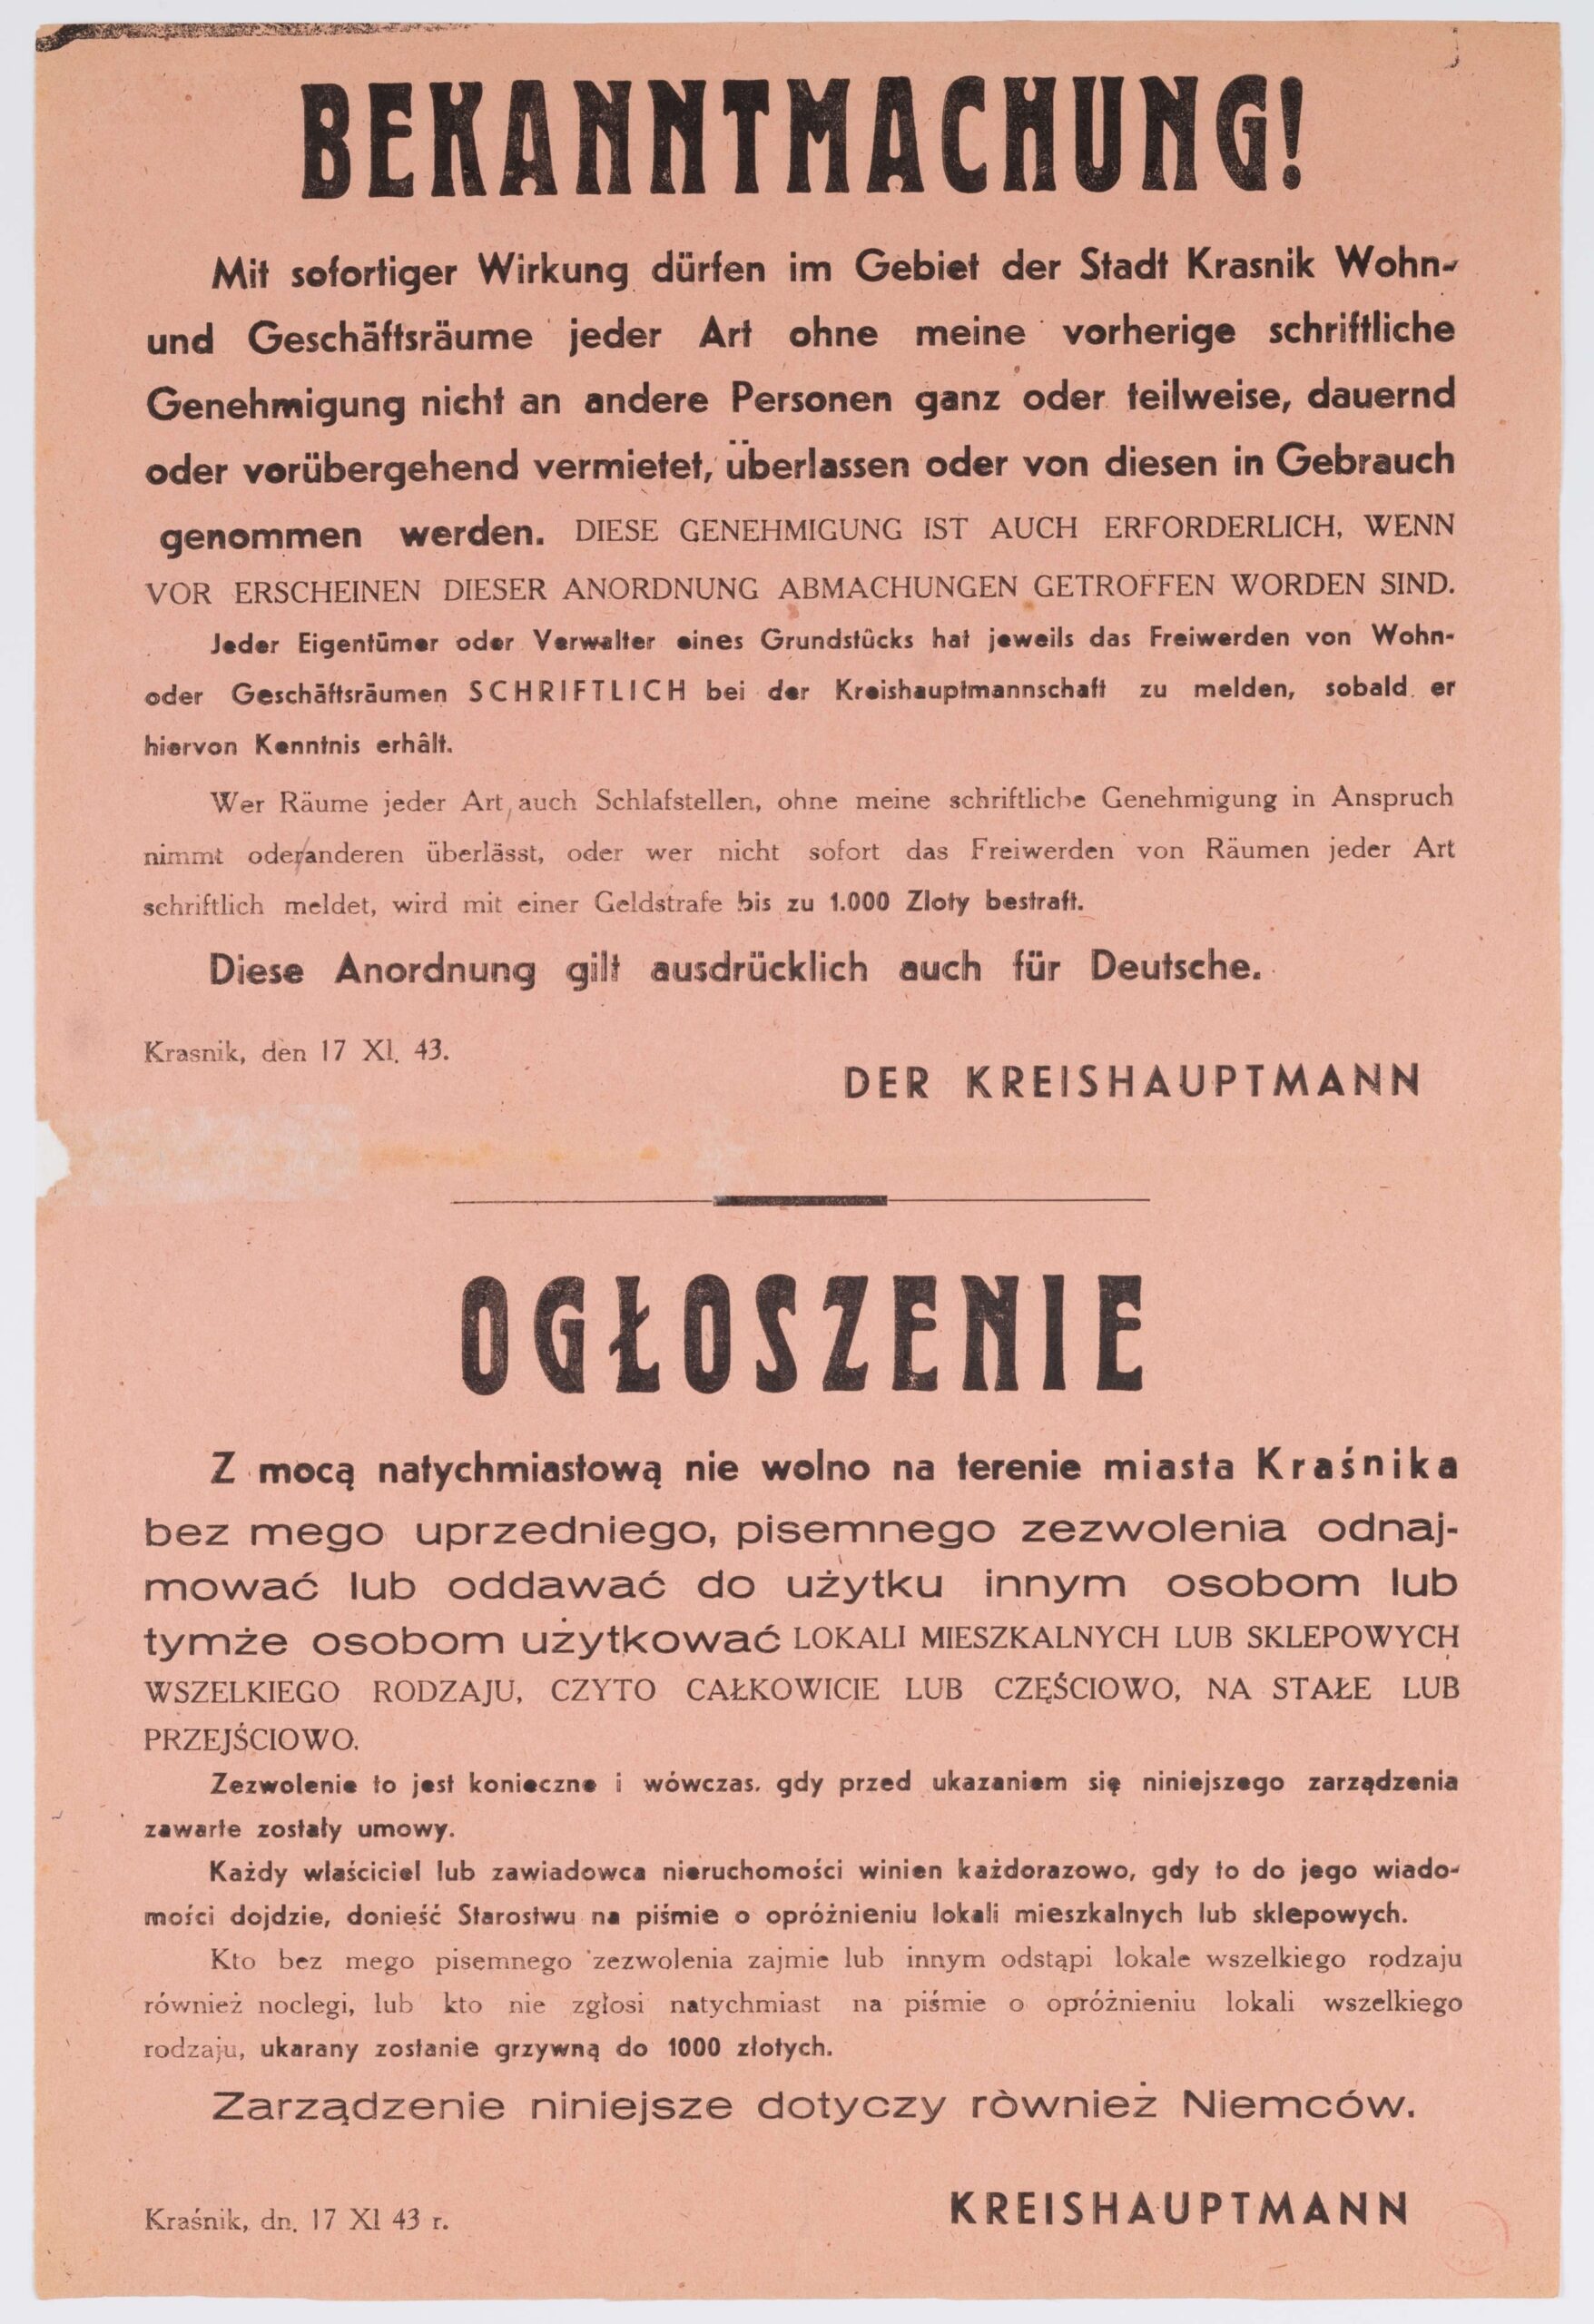 Ogłoszenie dotyczące zakazu wynajmu lokali w Kraśniku, wydane przez Kreishauptmanna (starostę). Afisz drukowany na rózowym papierze. Ogłoszenie mówi o konieczności posiadania pisemnego zezwolenia na wynajmowanie lokali w Kraśniku, o zakazie wynajmu bez zezwolenia i wymiarze kar za to. Ogłoszenie dwujęzyczne (po niemiecku i po polsku).